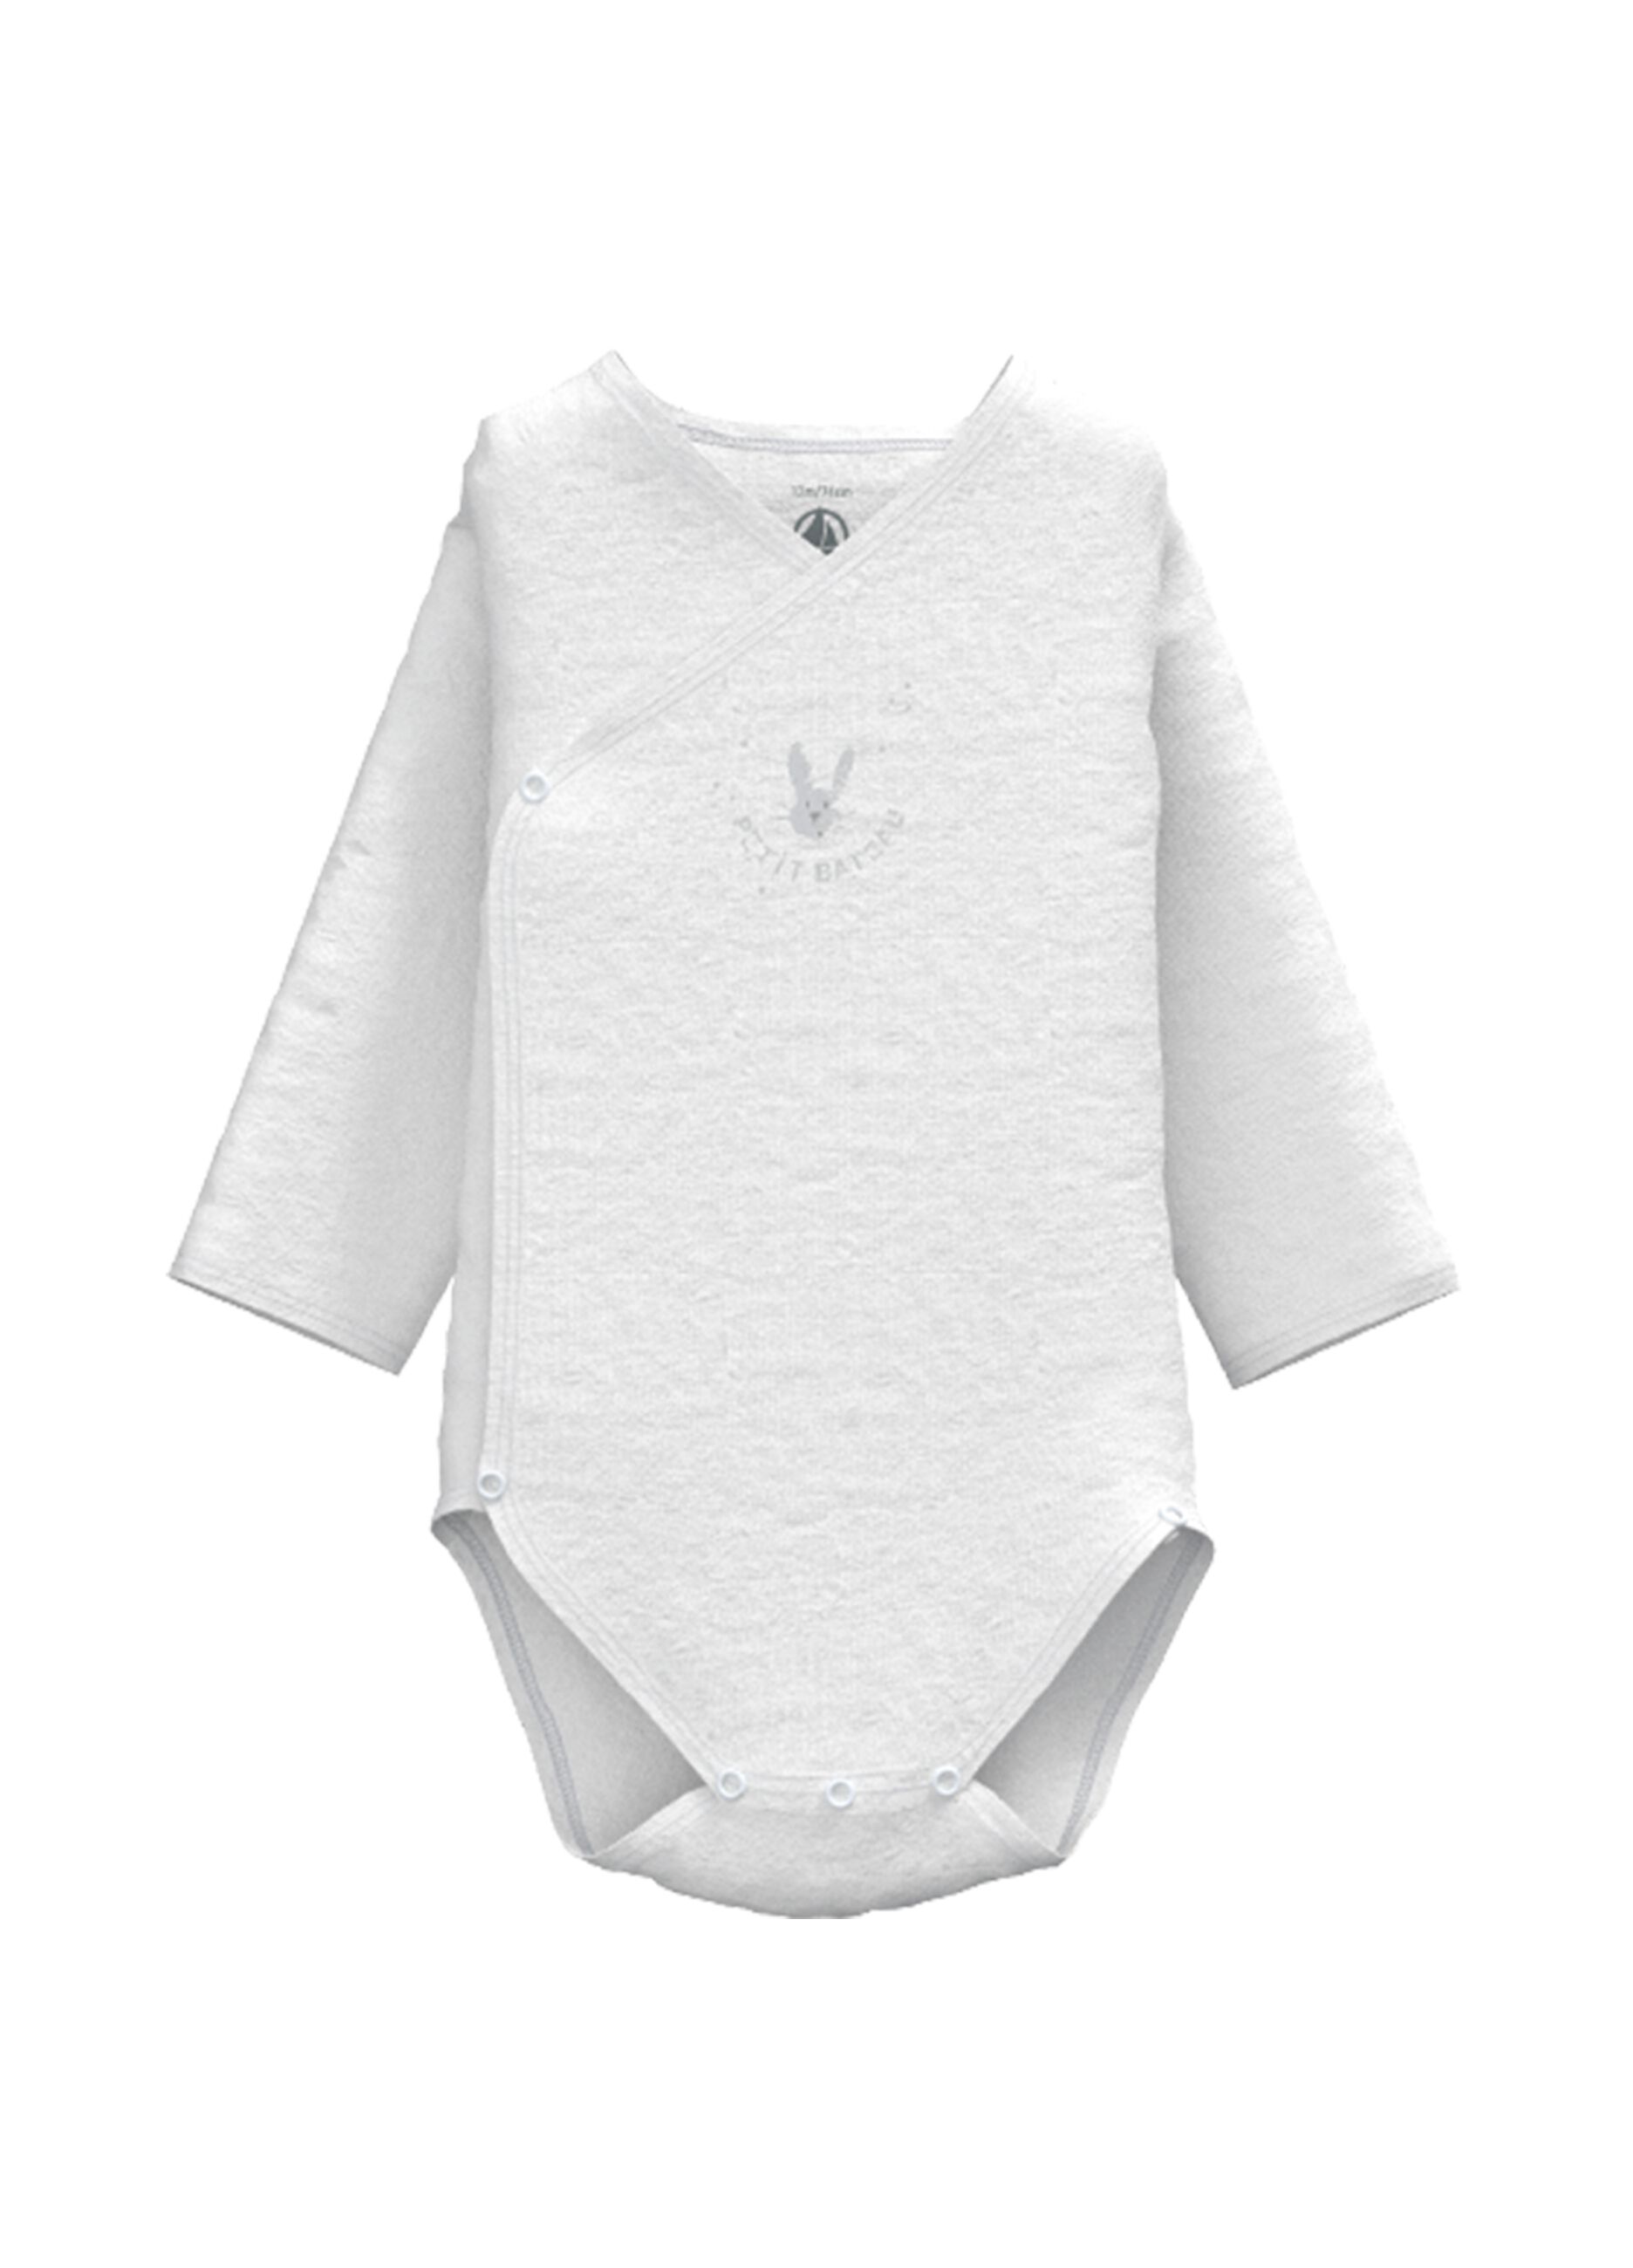 M.A.K baby - Body - Bébé (garçon) 0 à 24 mois blanc Coton blanc. 3